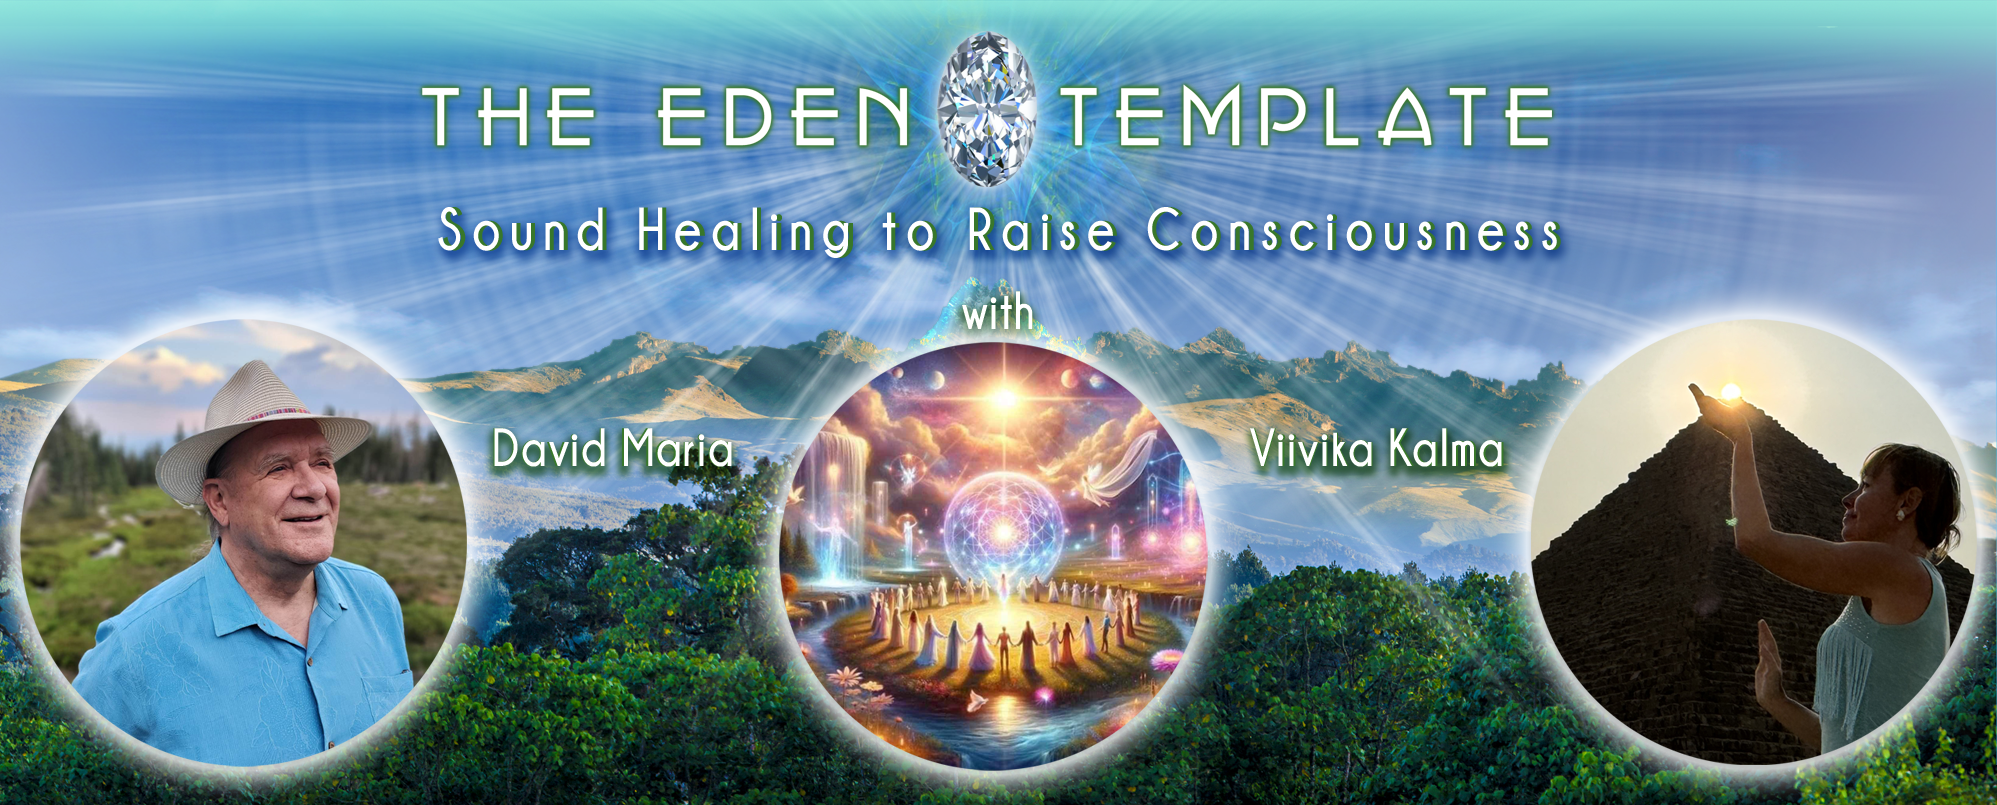 Sound Healing to Raise Consciousness